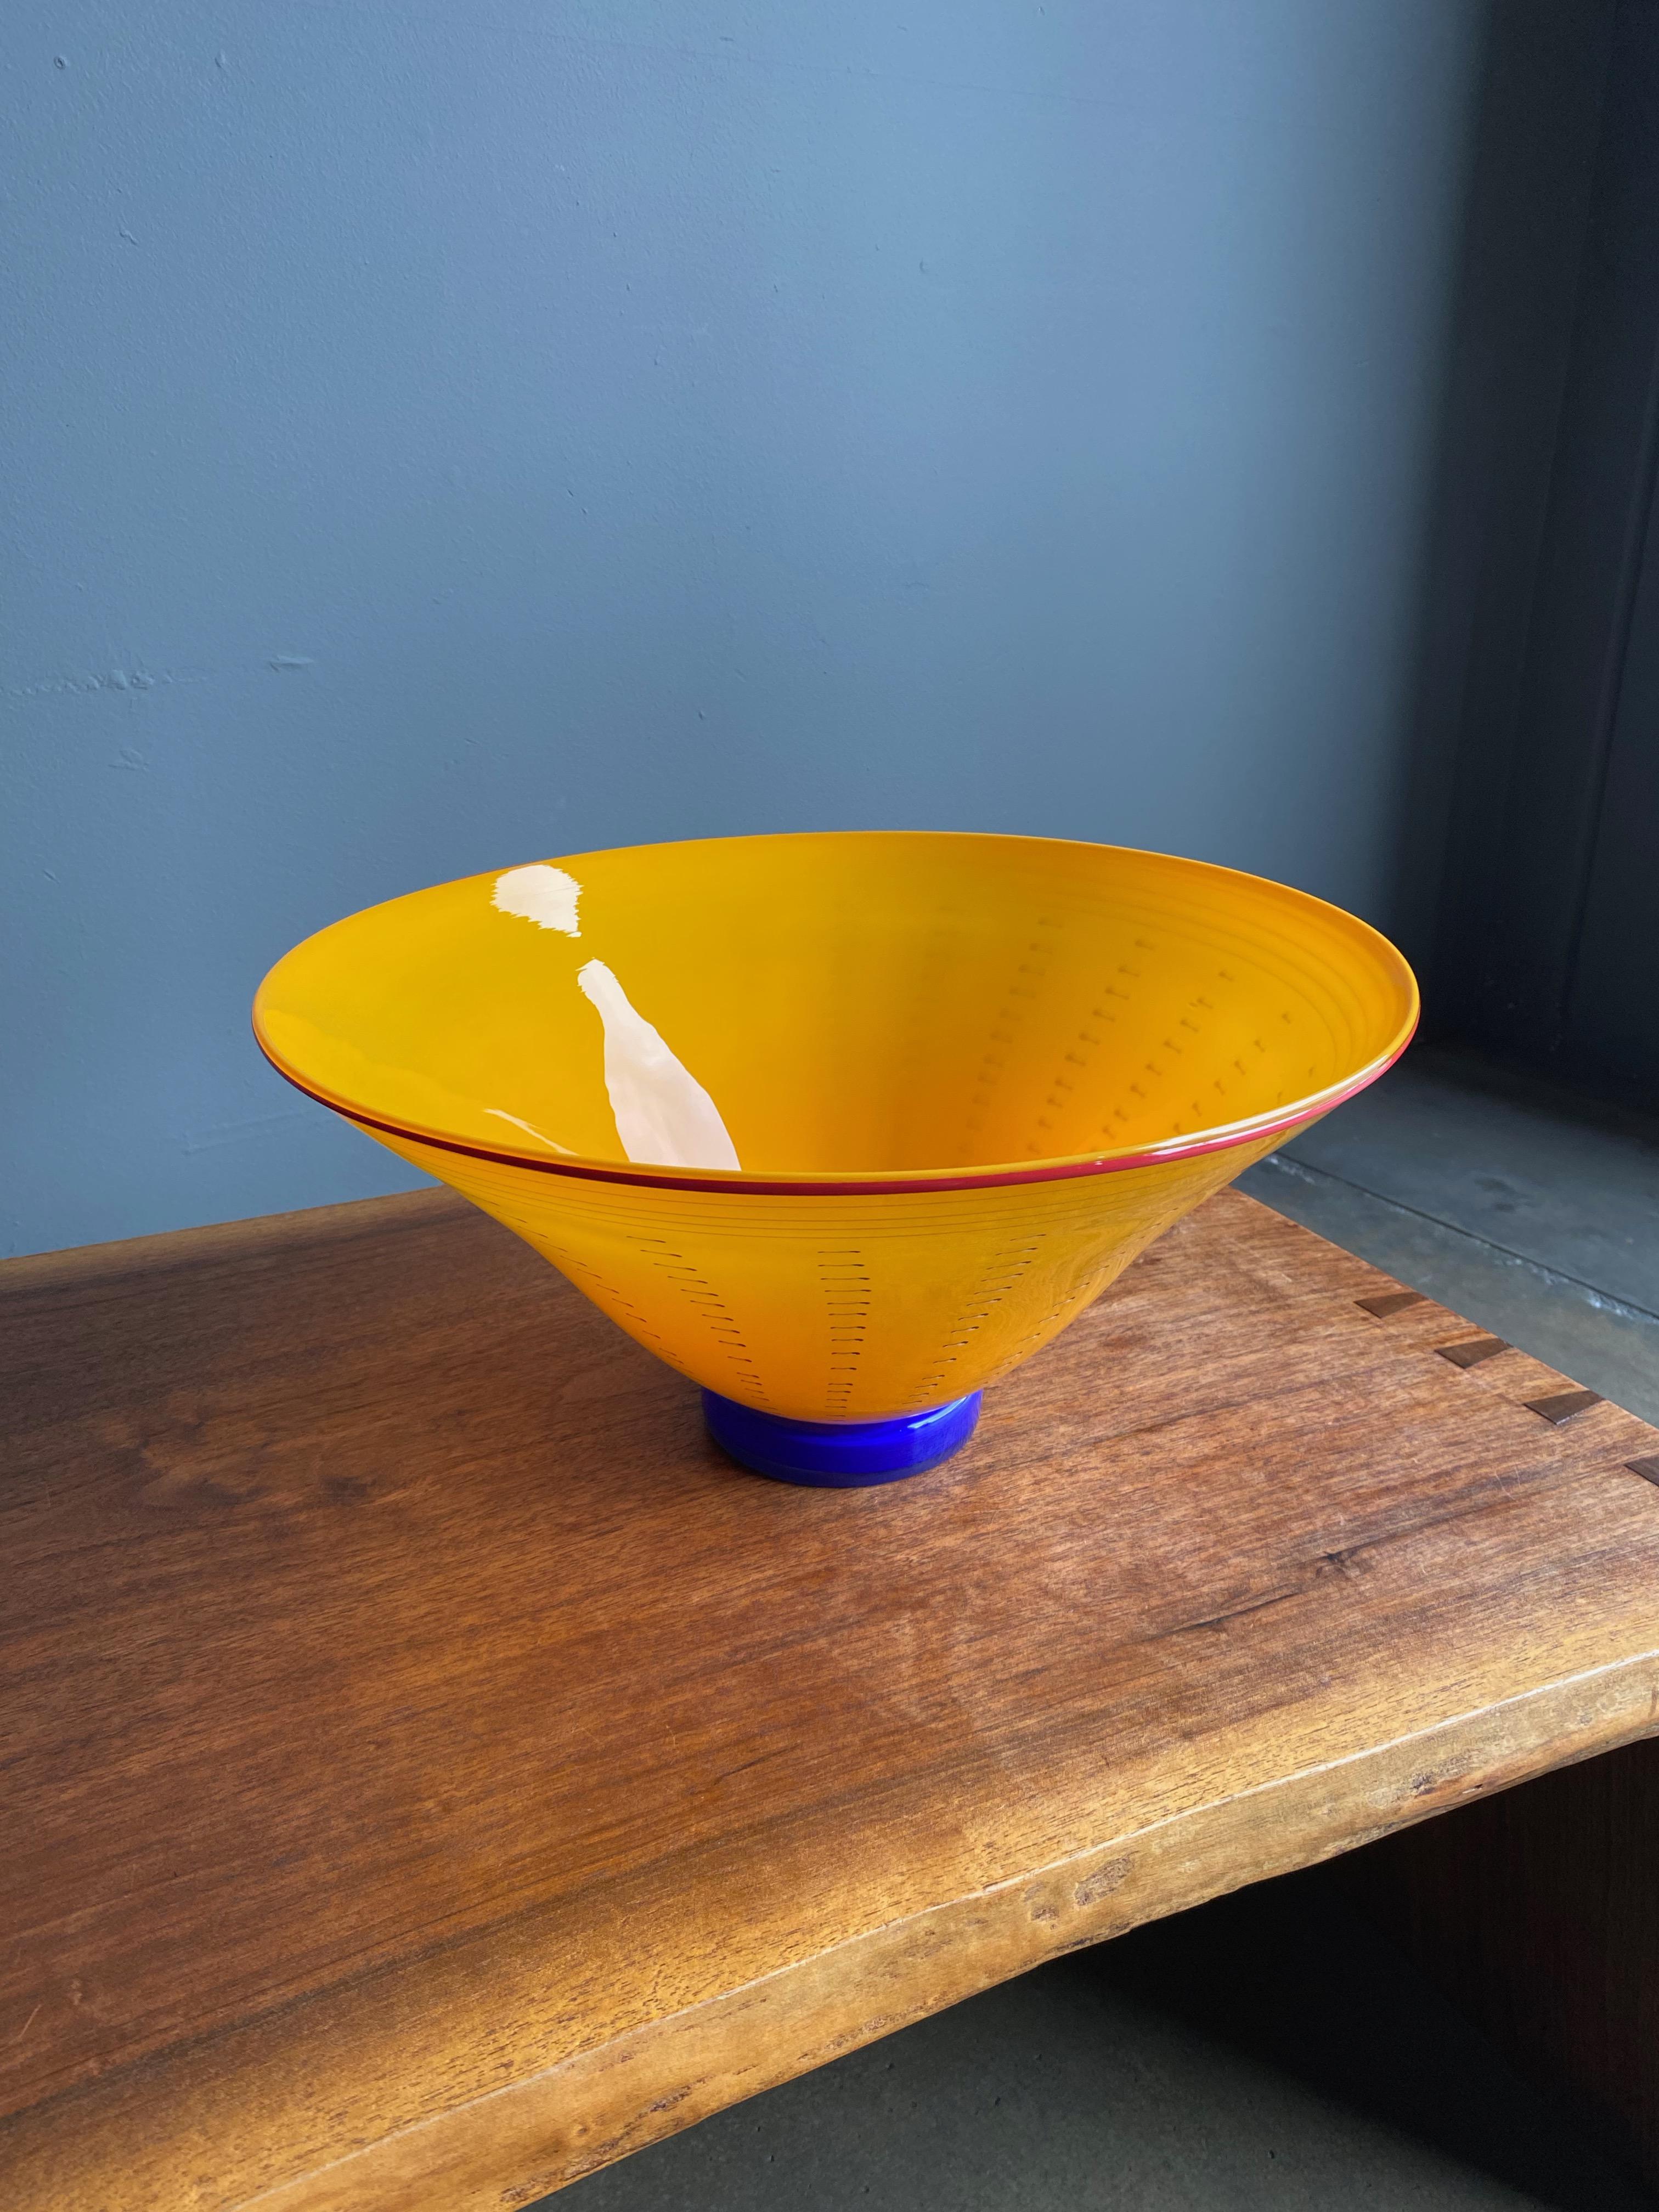 Art glass bowl by artist Bruce Pizichillo, beautiful yellow/orange colors.